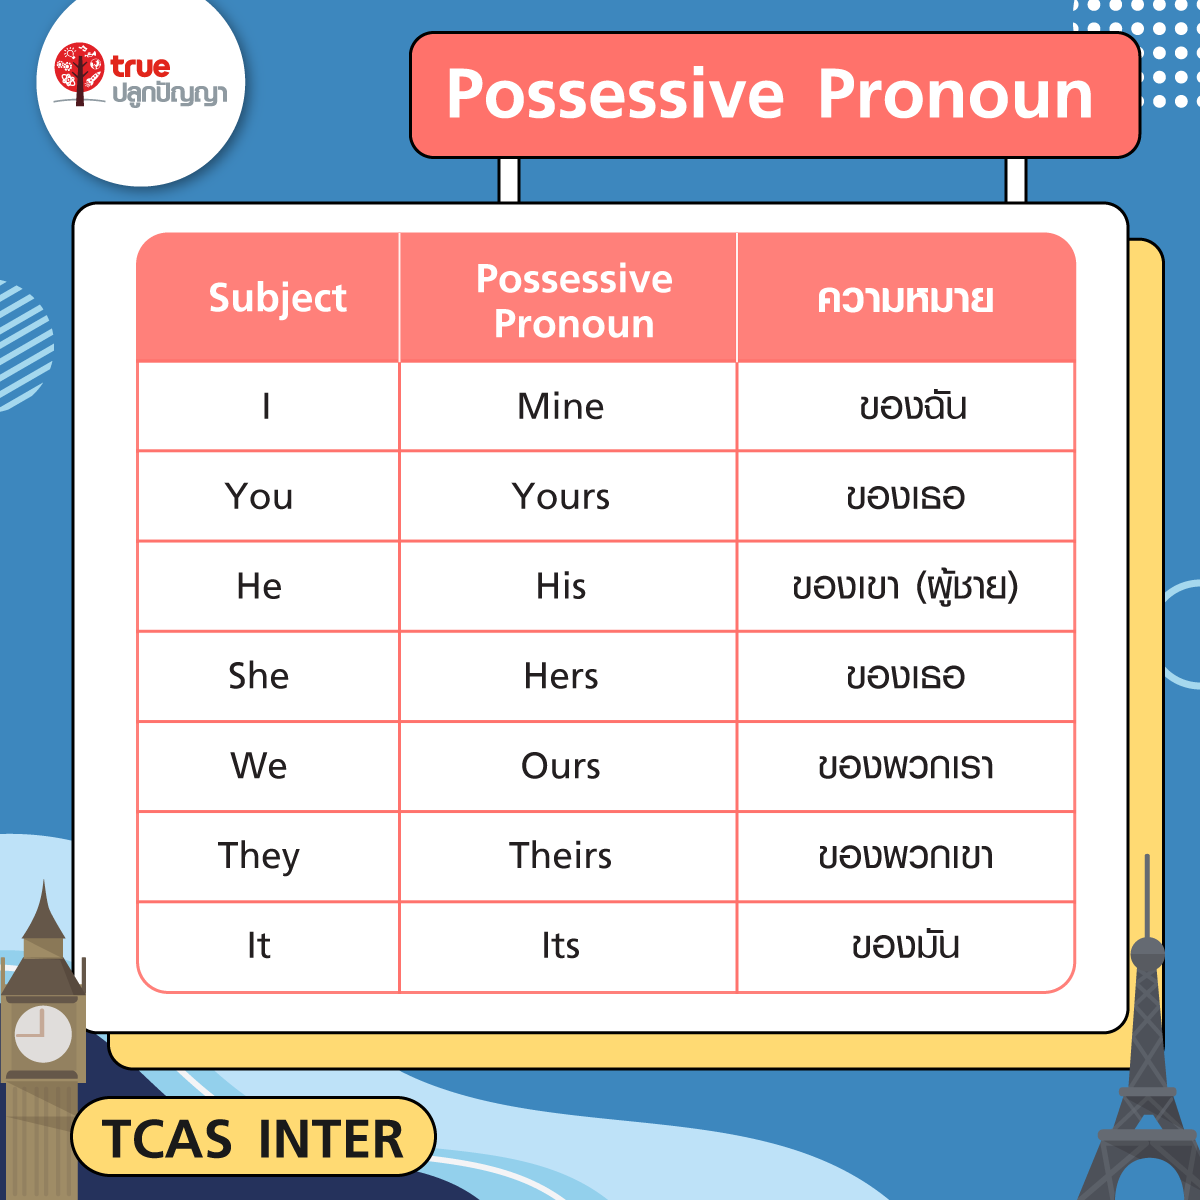 แกรมม่า TU-GET การใช้ Possessive Pronoun